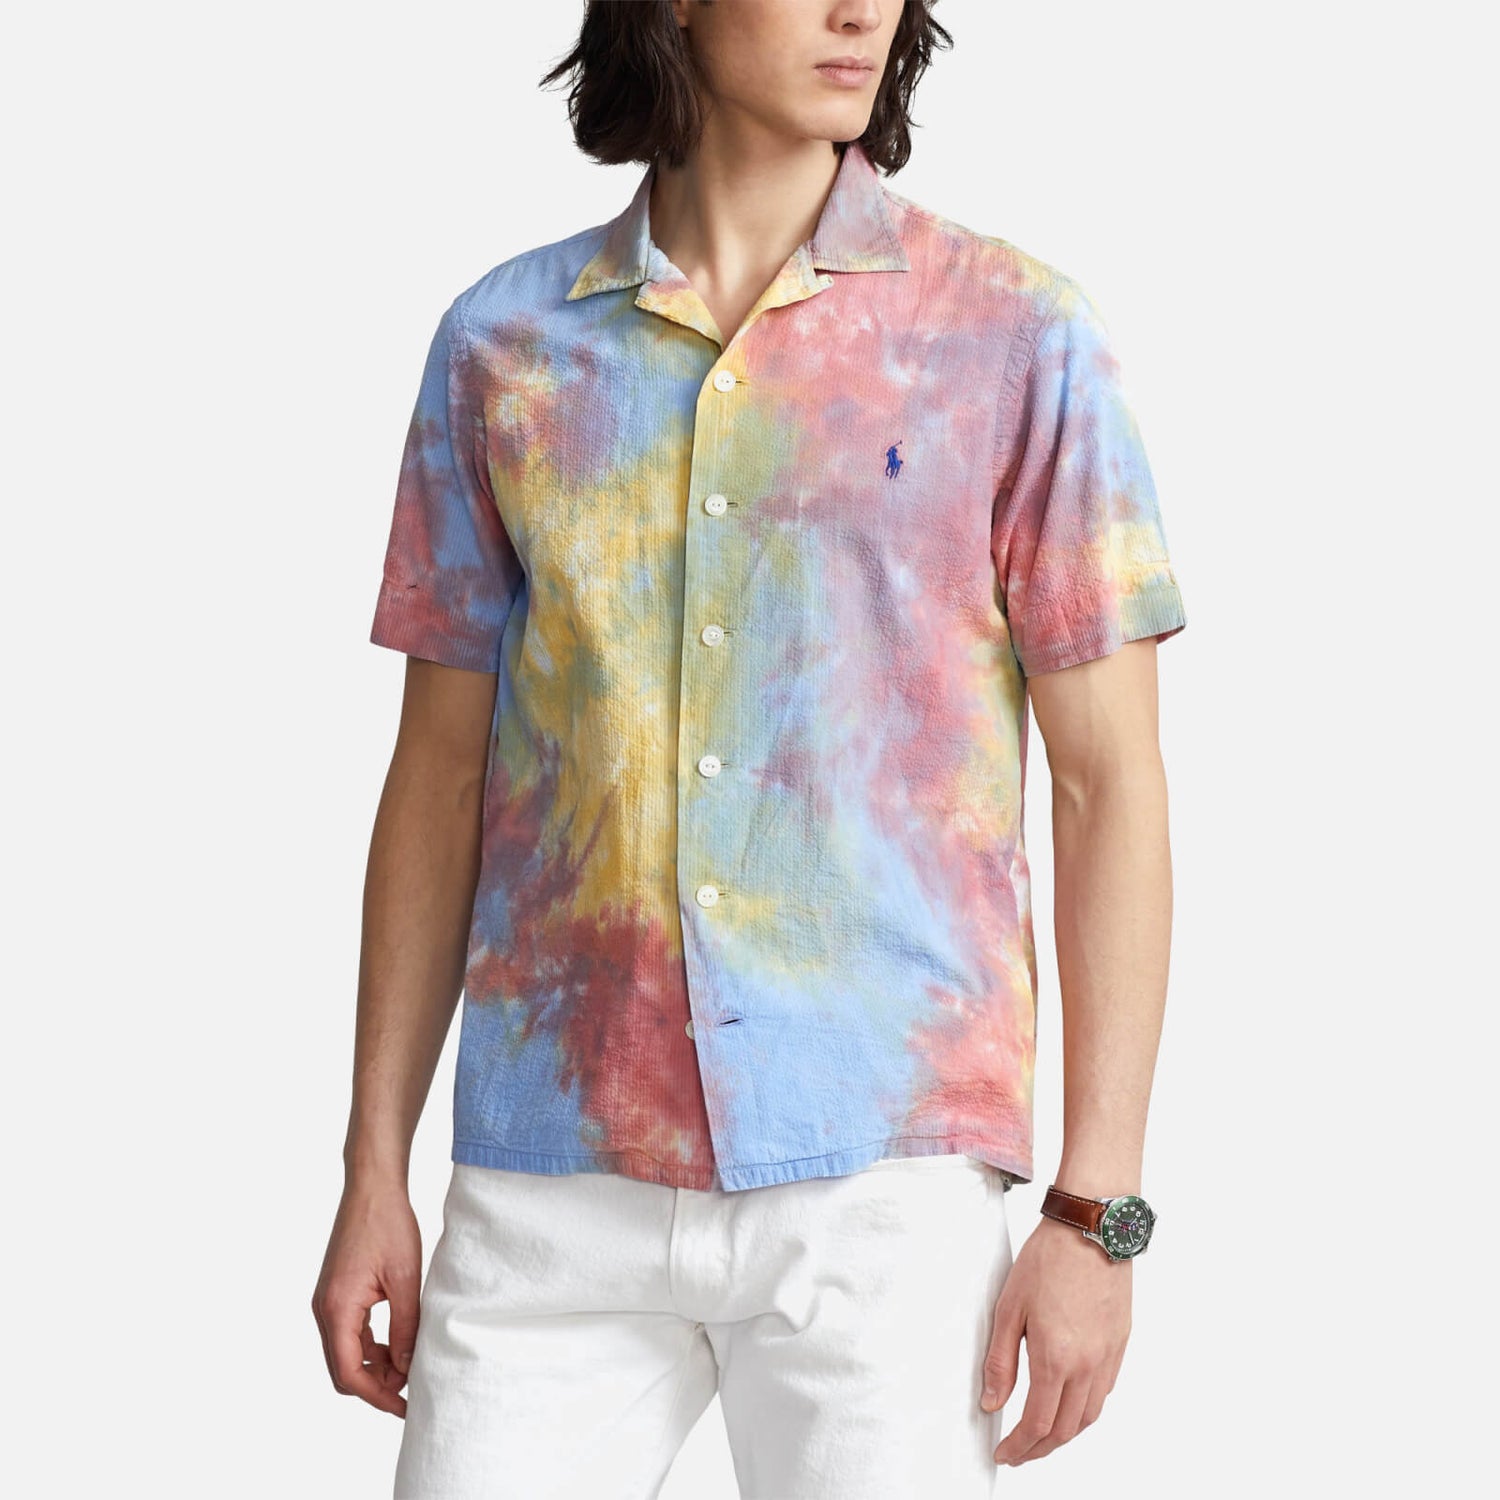 Polo Ralph Lauren Men's Seersucker Short Sleeve Shirt - Tie Dye Multi - S